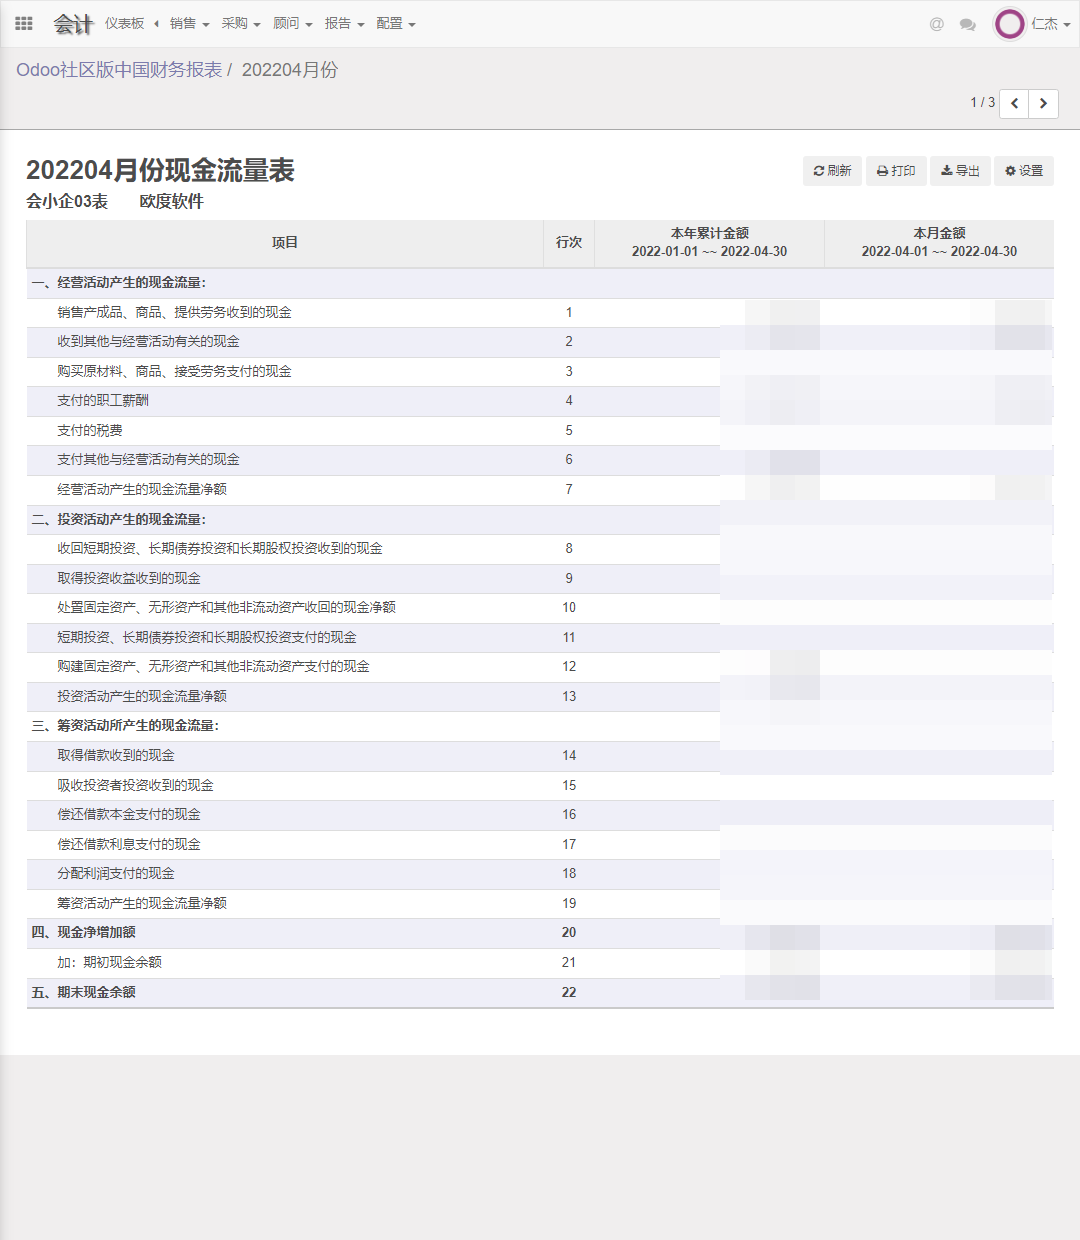 Odoo社区版中国财务会计现金流量表